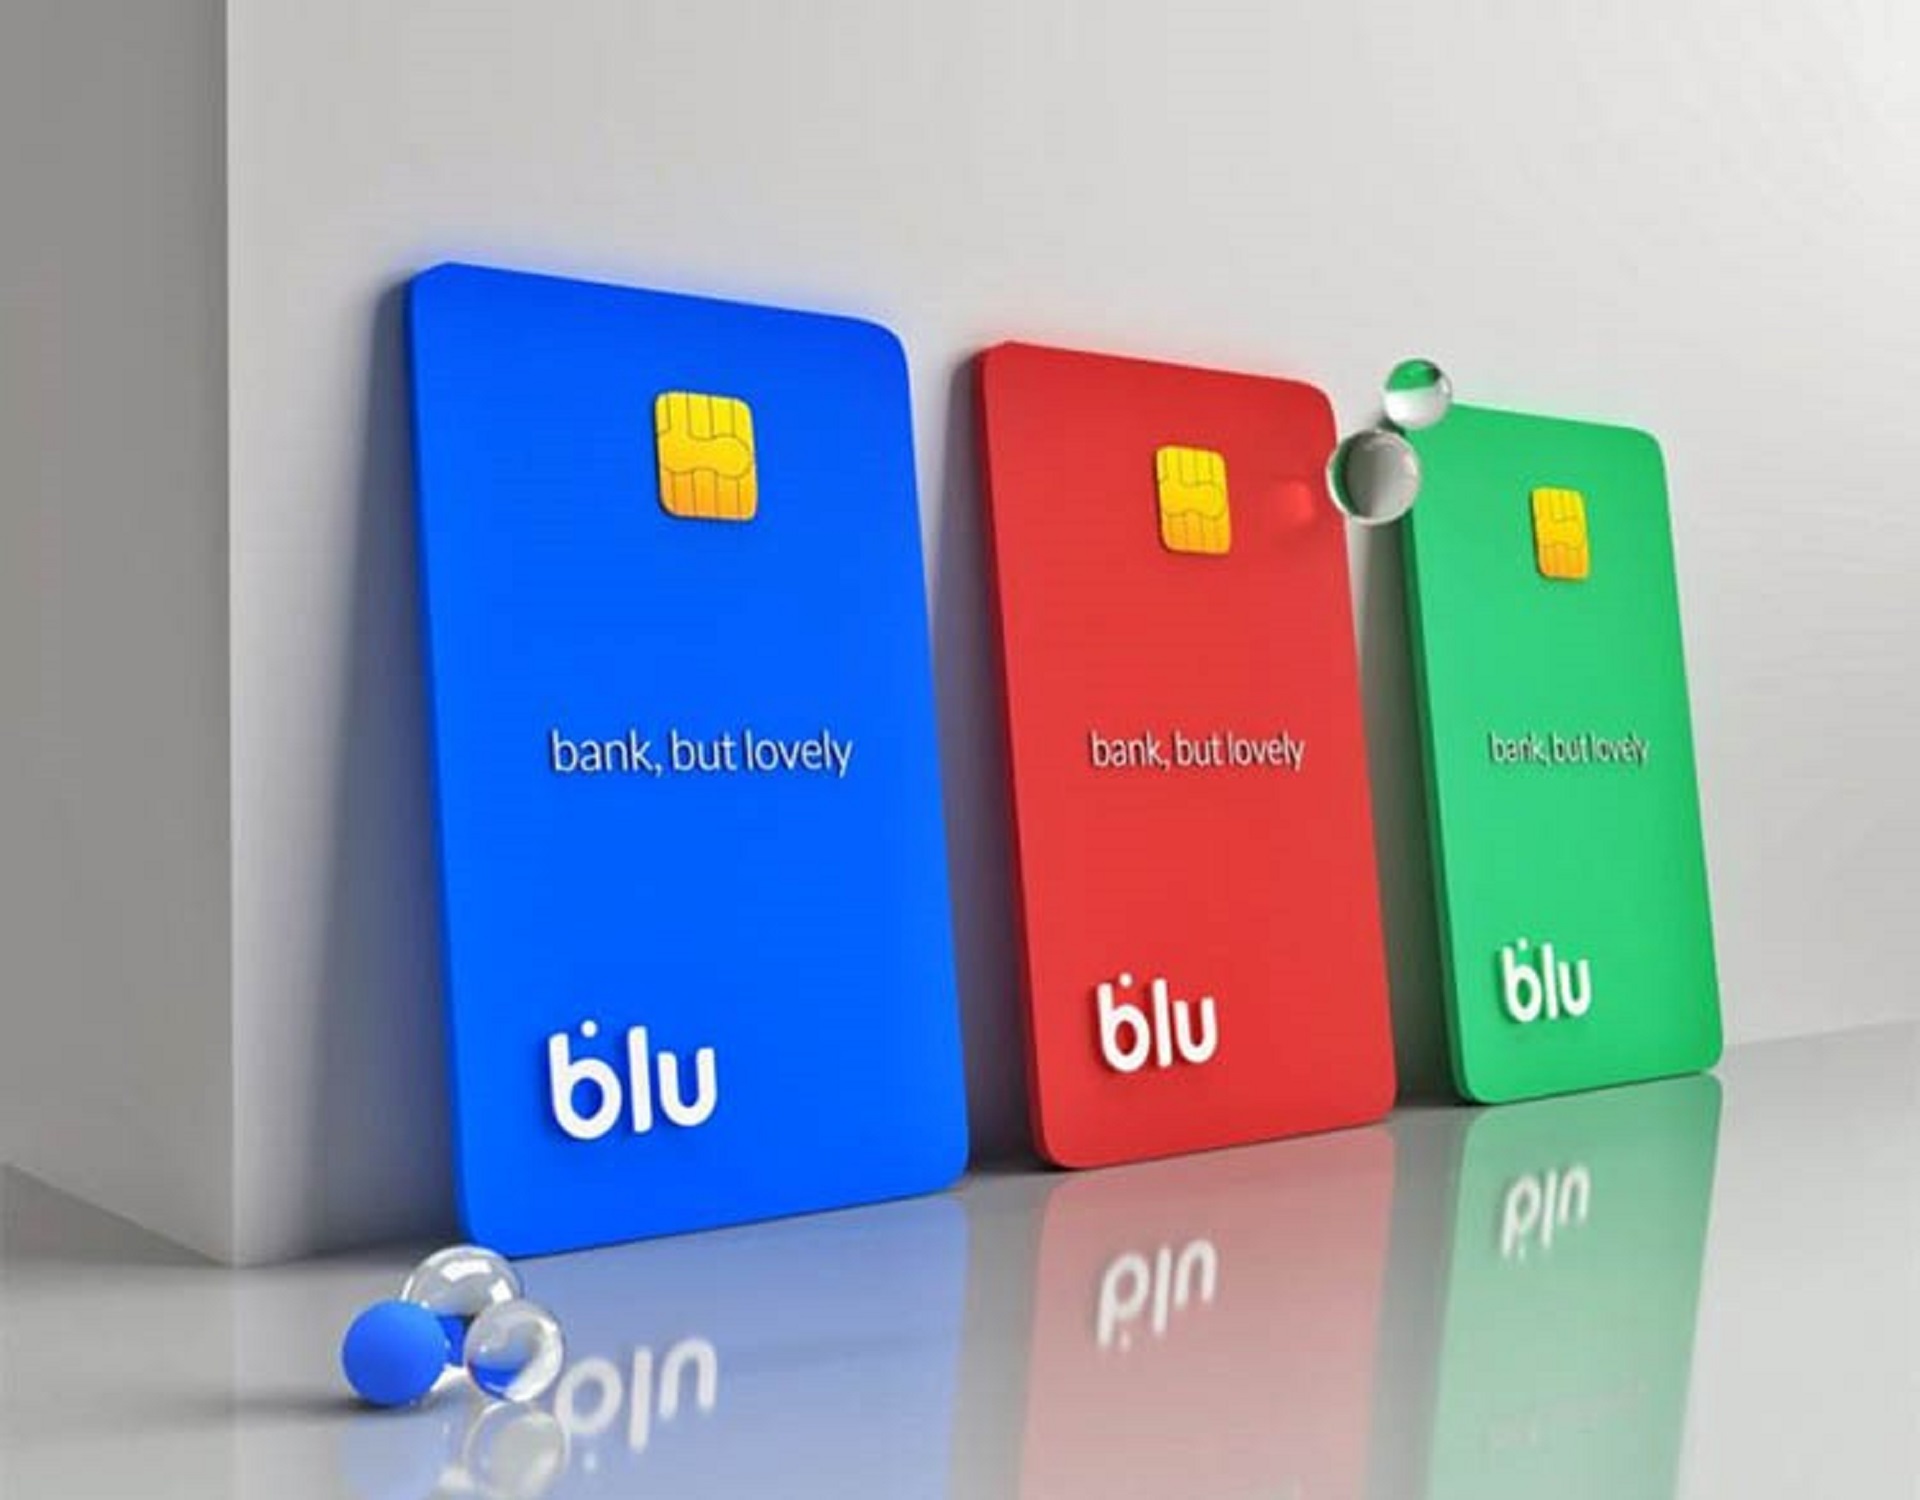 تصویر سه نوع کارت مختلف در تبلیغات برای بانک آبی